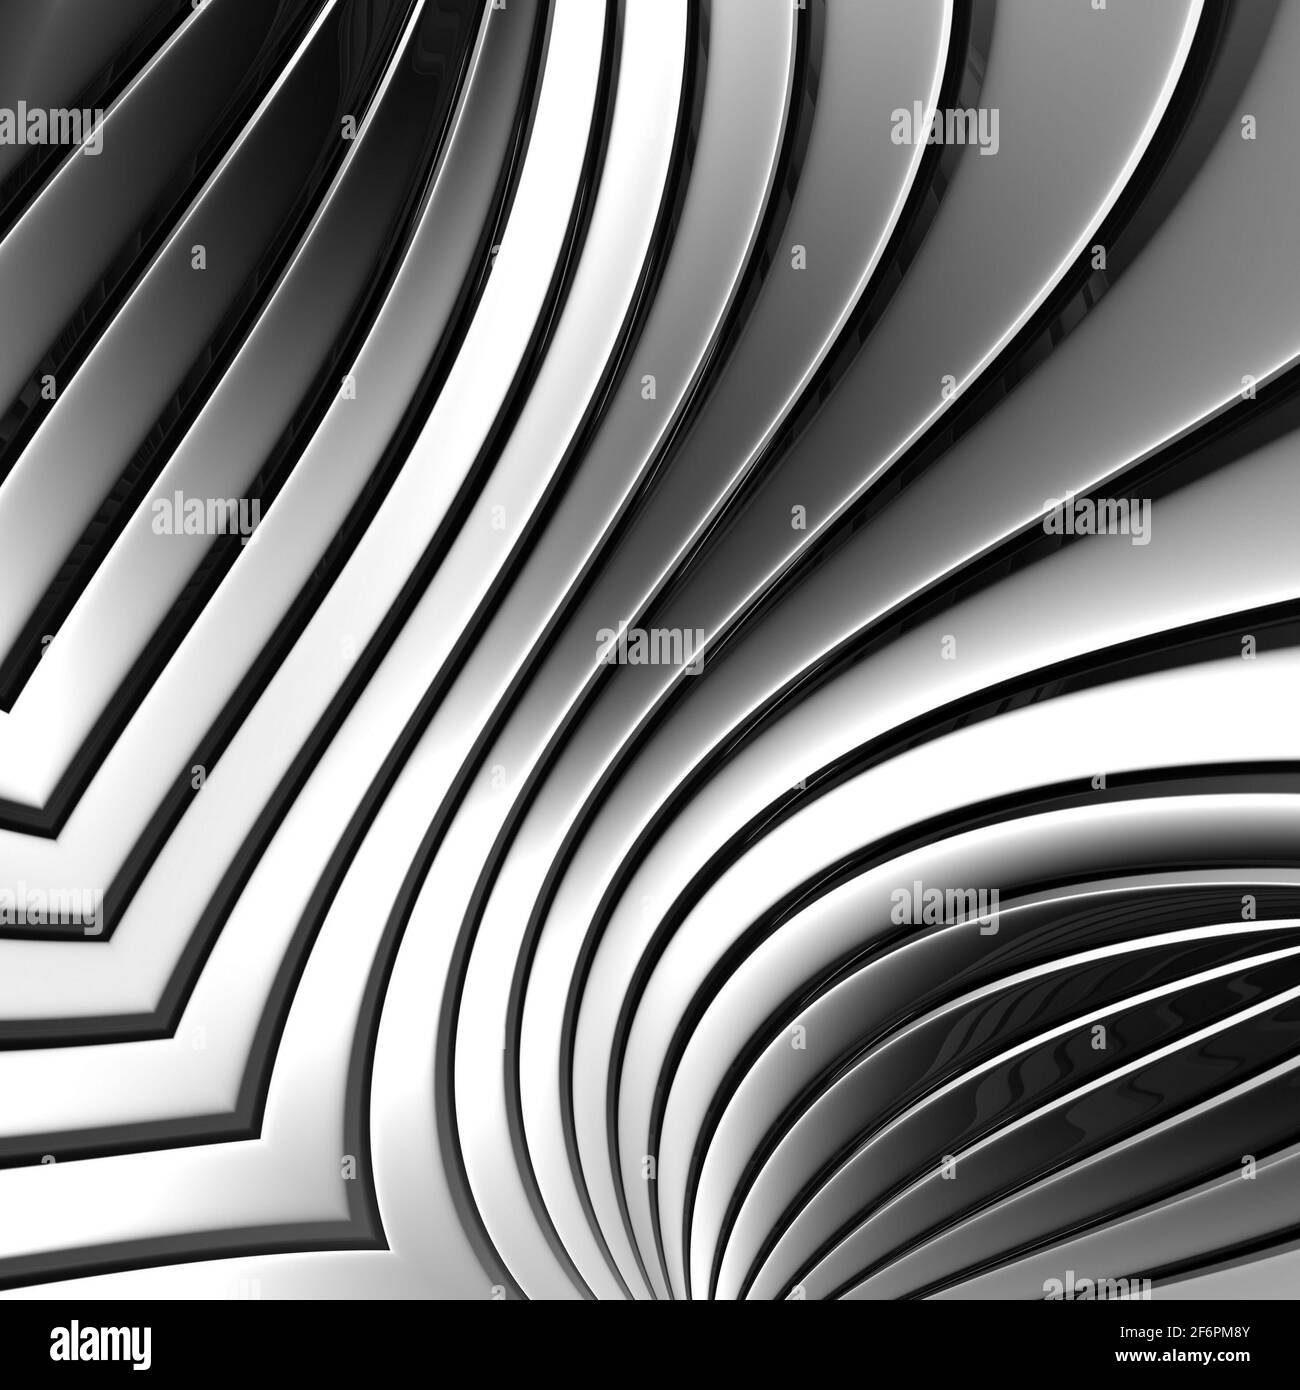 Chrome Farbe Geometrie grau 3d abstrakt Metallstreifen Hintergrund. Schöne  Formen Biegen Linien Chrom Farbe Stockfotografie - Alamy